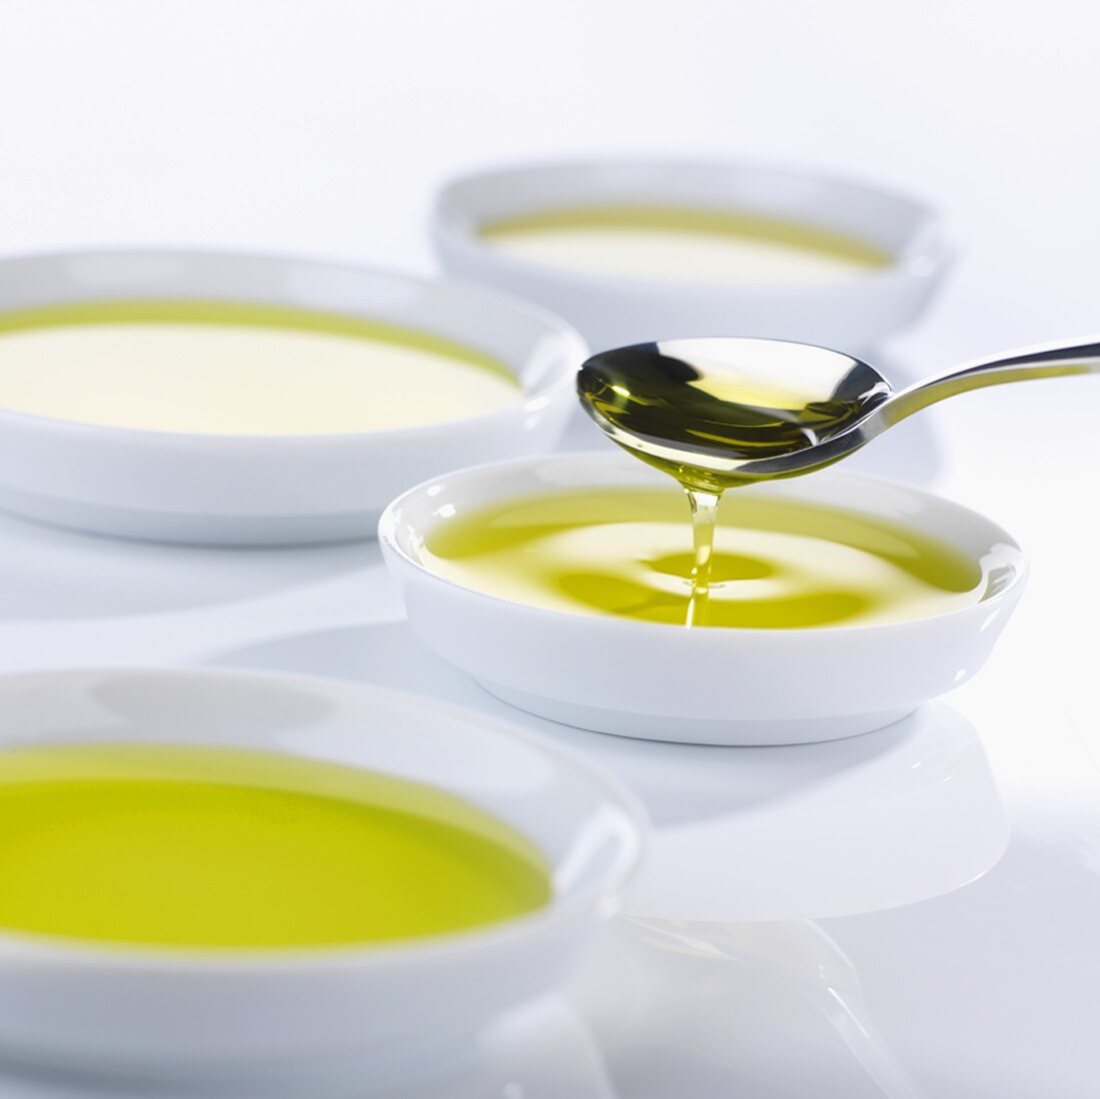 Tasting bowls full of olive oil